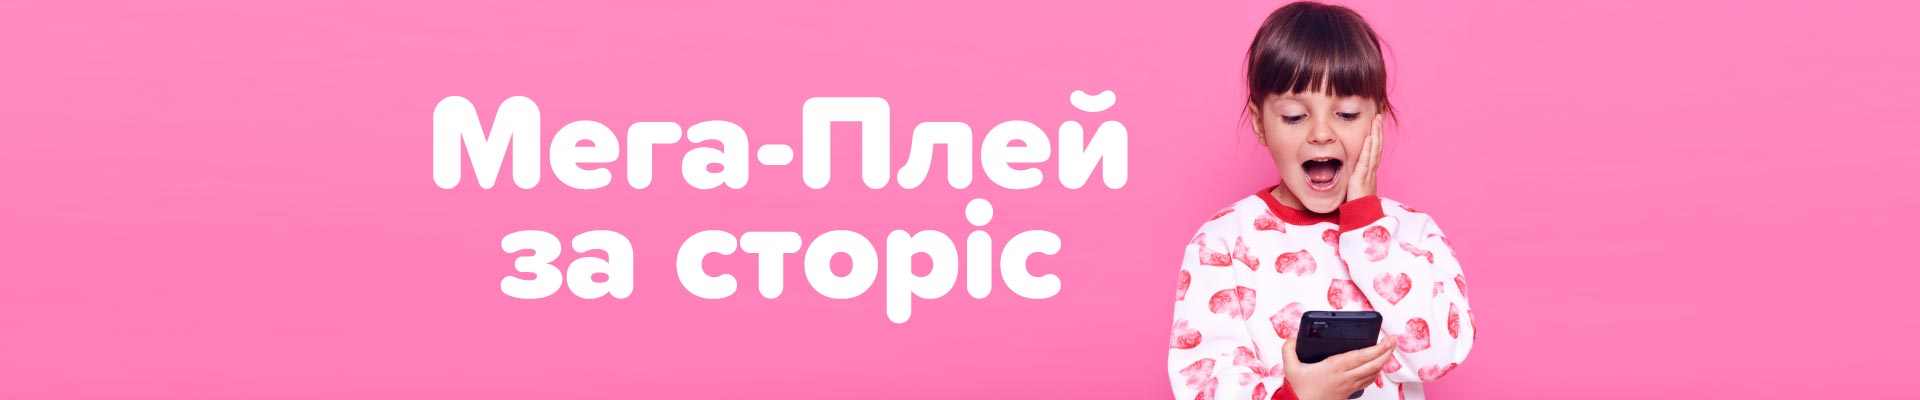 Акція «Мега-Плей за сторіс» в Києві! Ігроленд 1